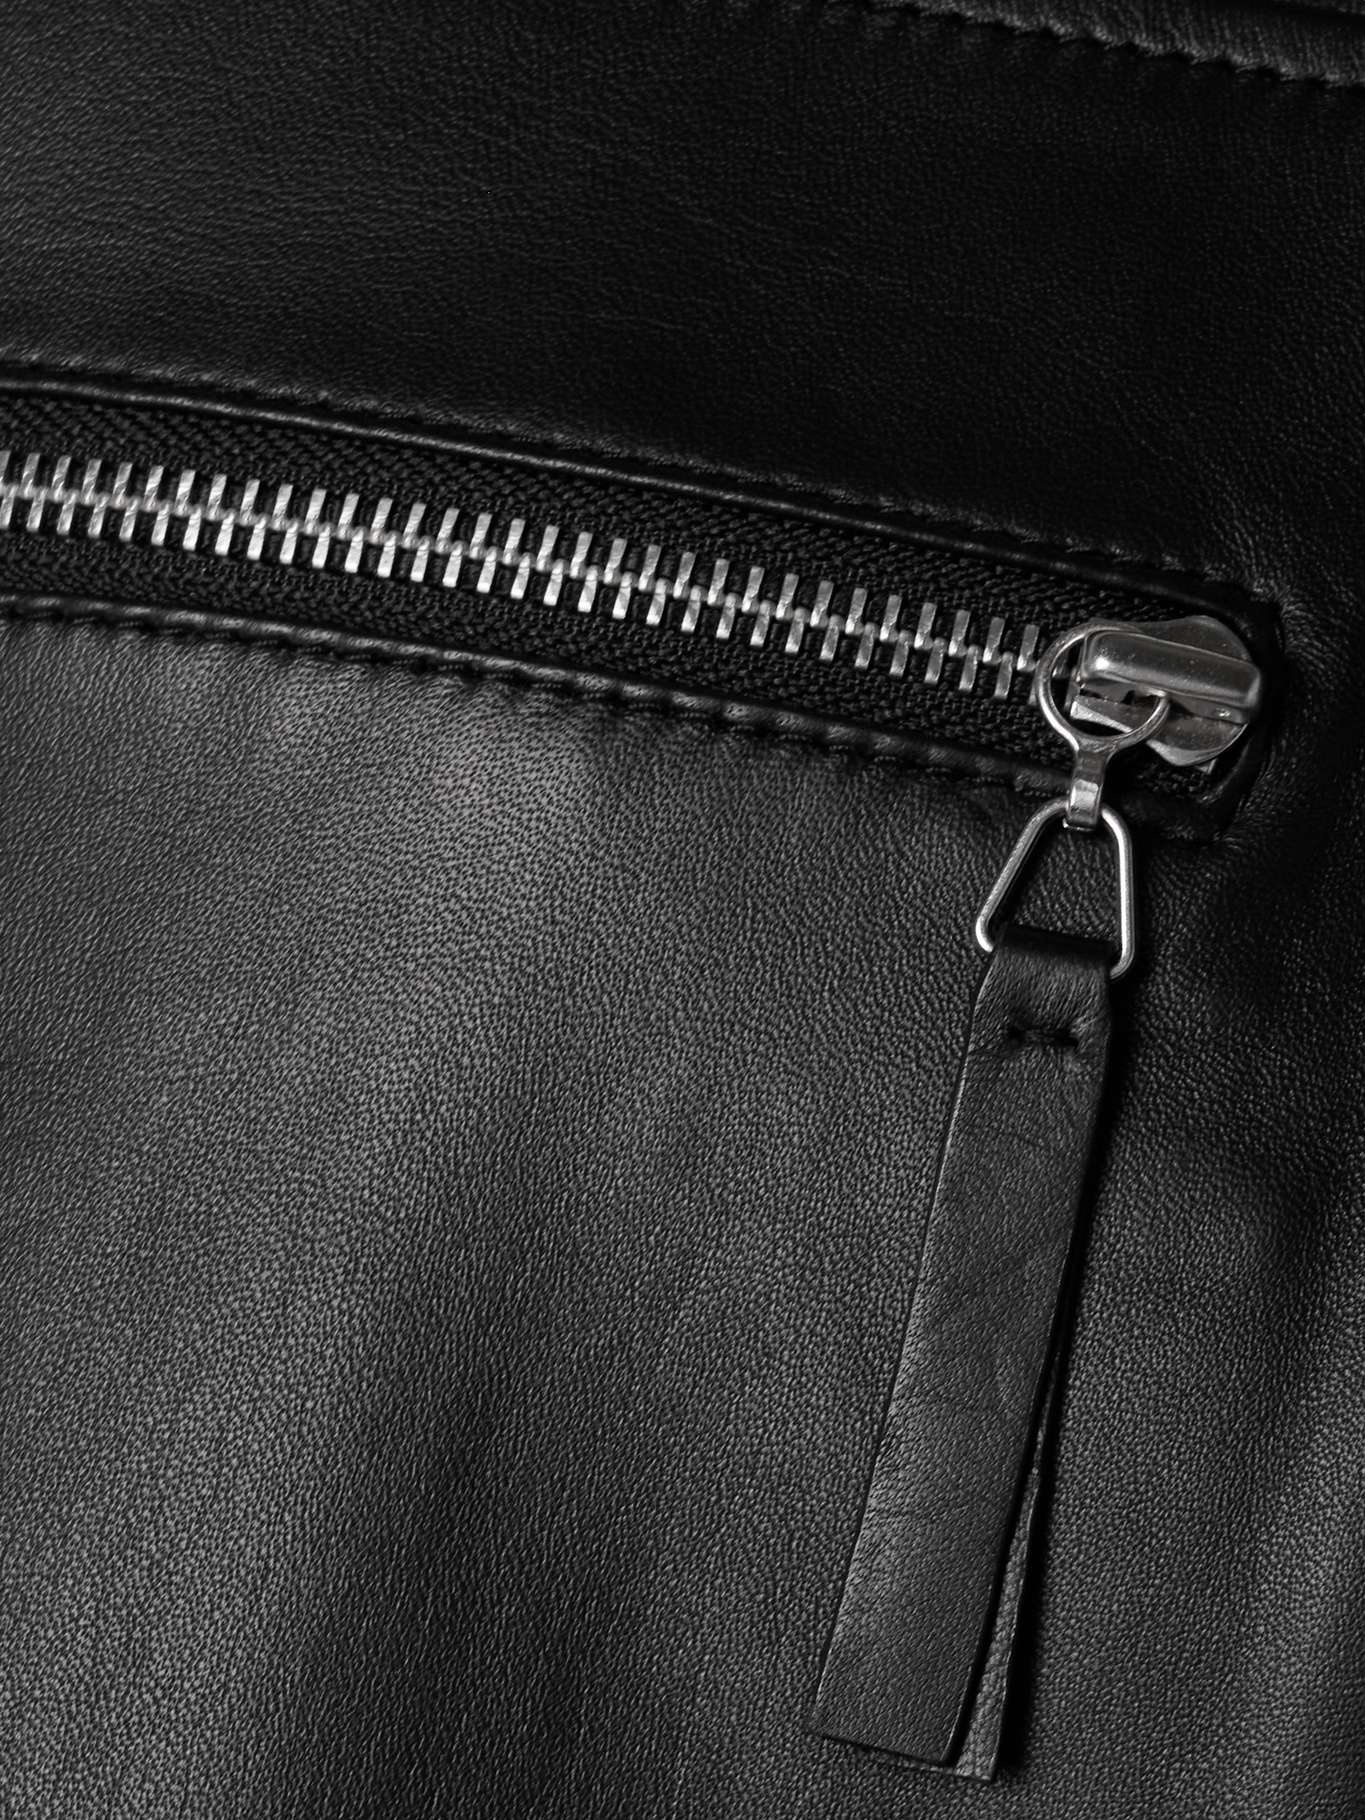 Annabel paneled leather jacket - 5